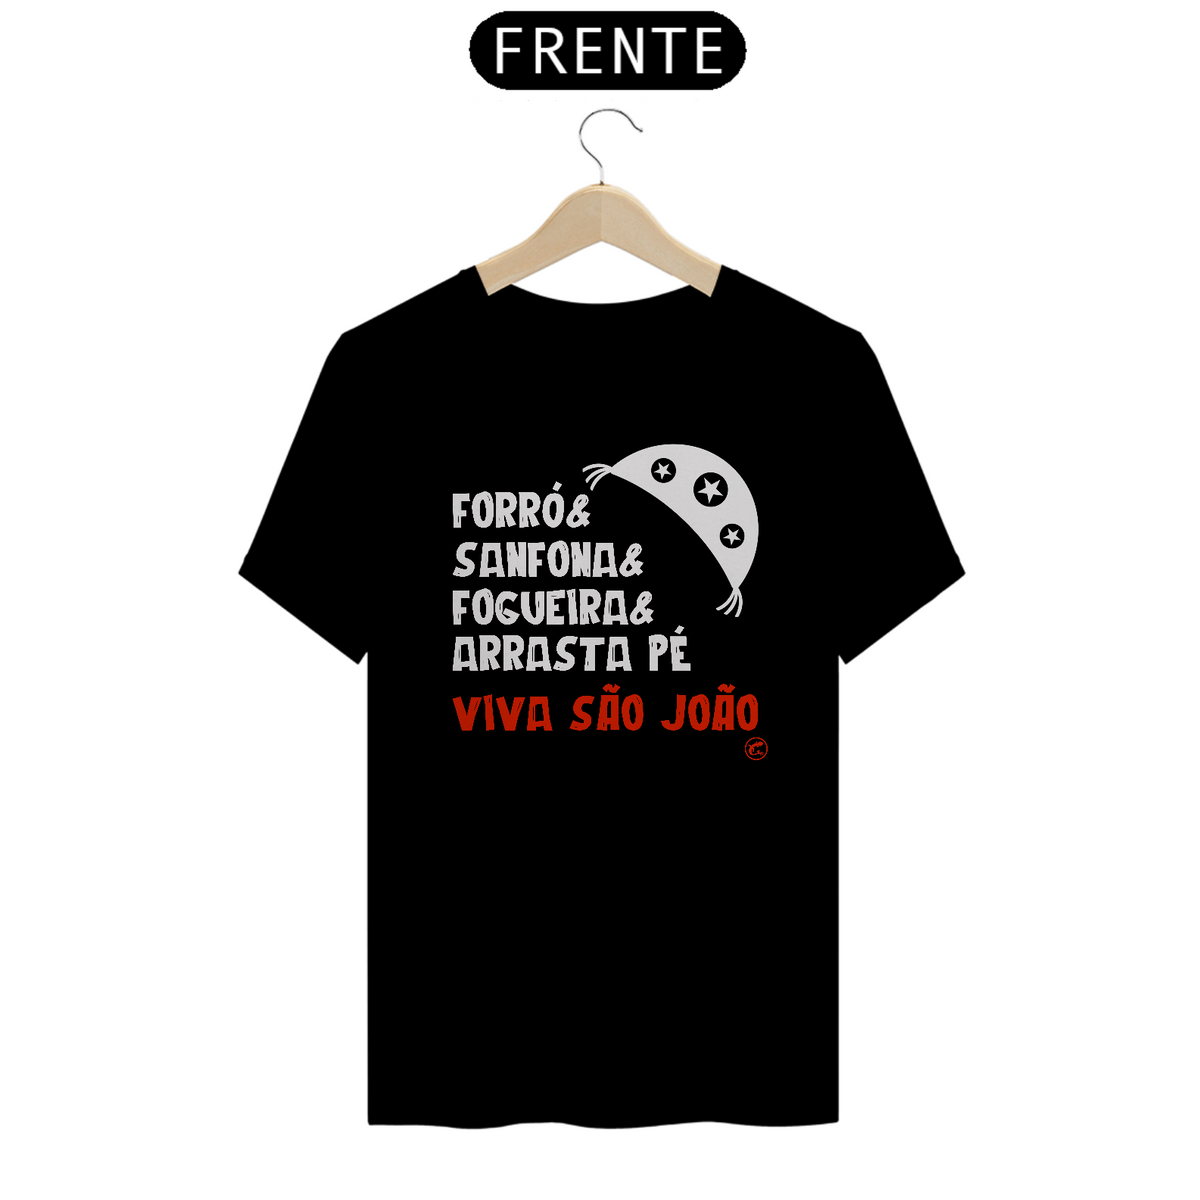 Nome do produto: Camiseta de São João - Forró, Sanfona, Fogueira e Arrasta Pé